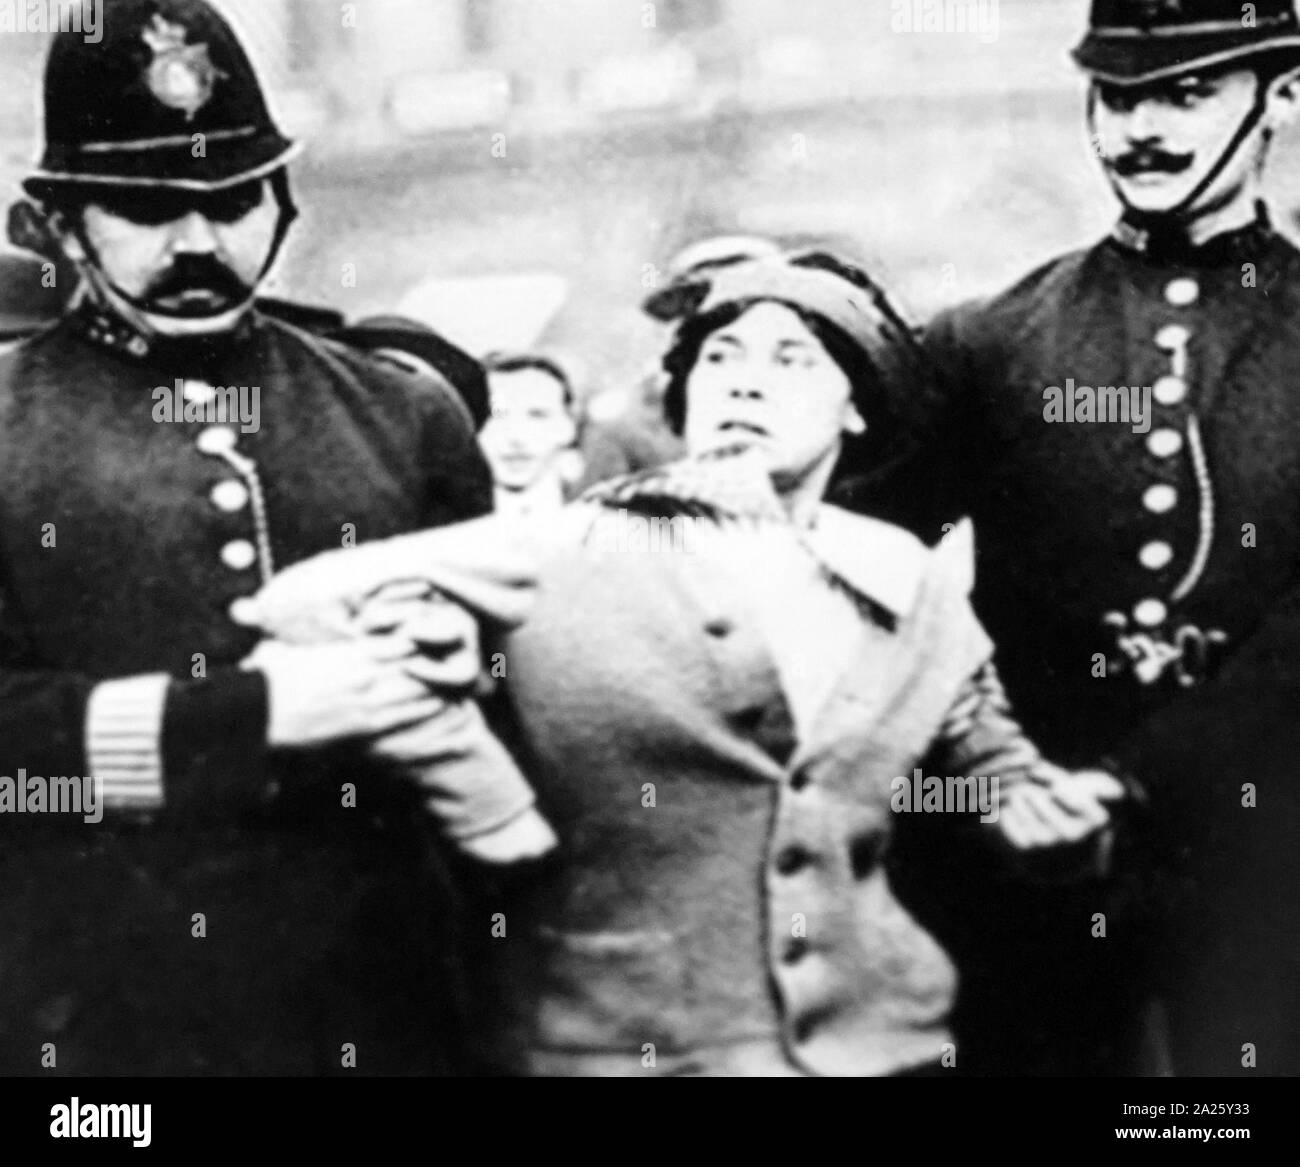 Photographie d'une suffragette être arrêtés en Grande-Bretagne. Une suffragette était membre d'organisations de femmes au début du xxe siècle qui, sous la bannière "vote des femmes", a lutté pour le droit de vote dans les élections, connu comme le vote des femmes. Banque D'Images